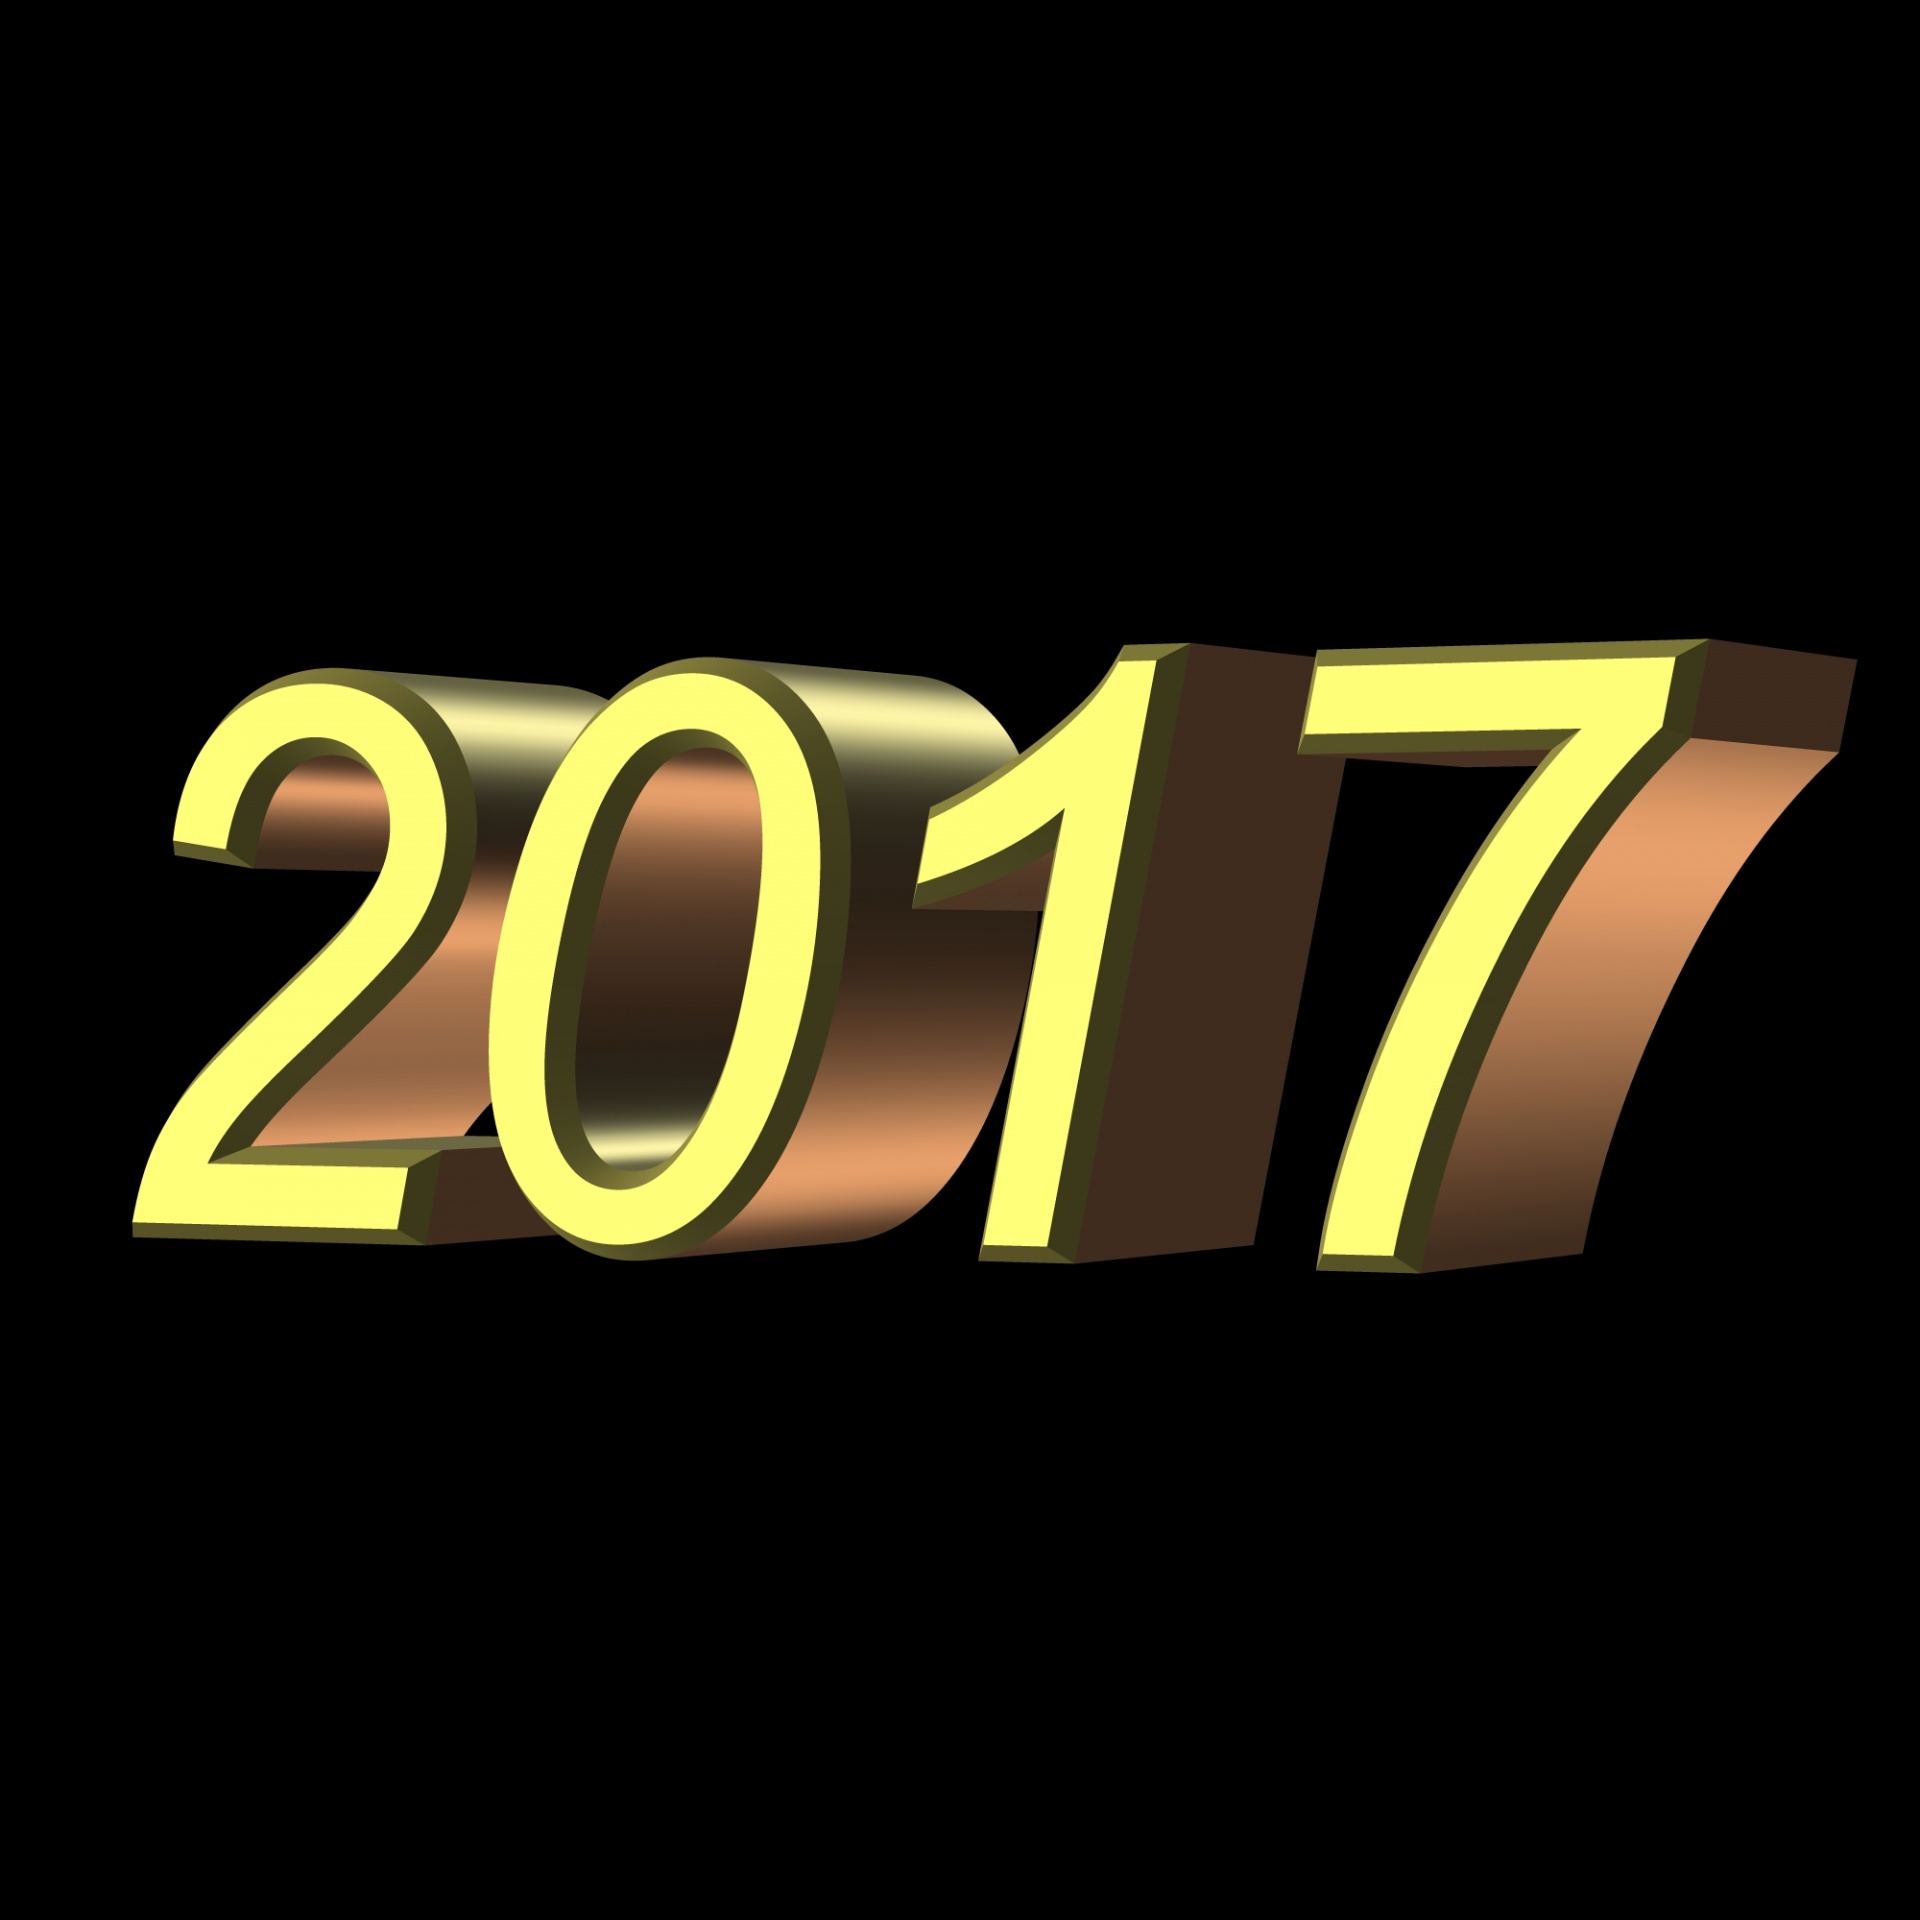 2017 year background free photo